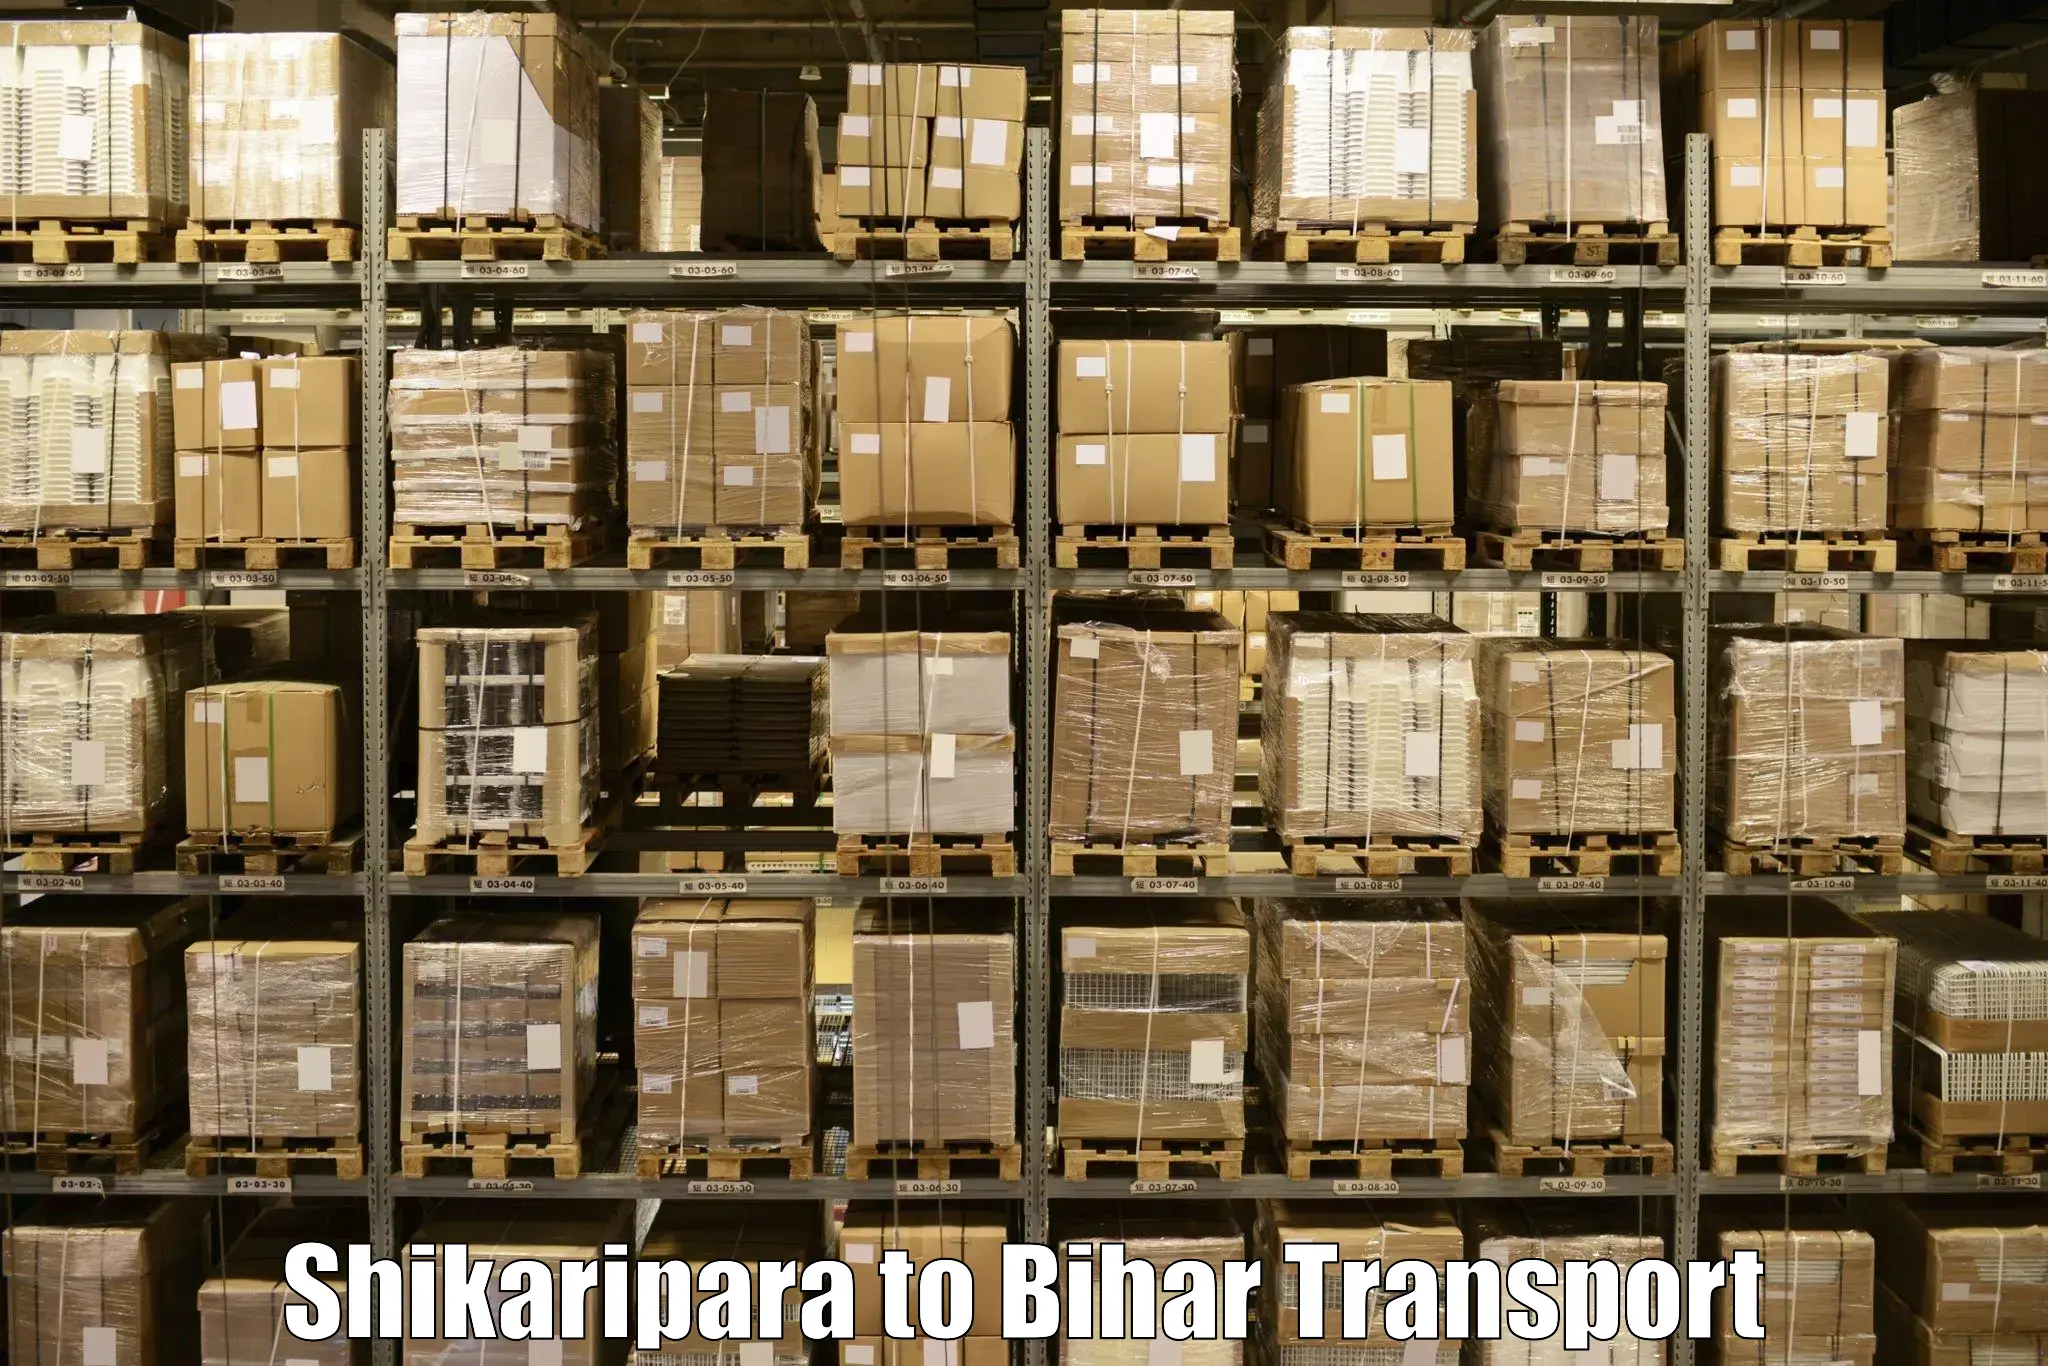 Parcel transport services Shikaripara to Bhagalpur